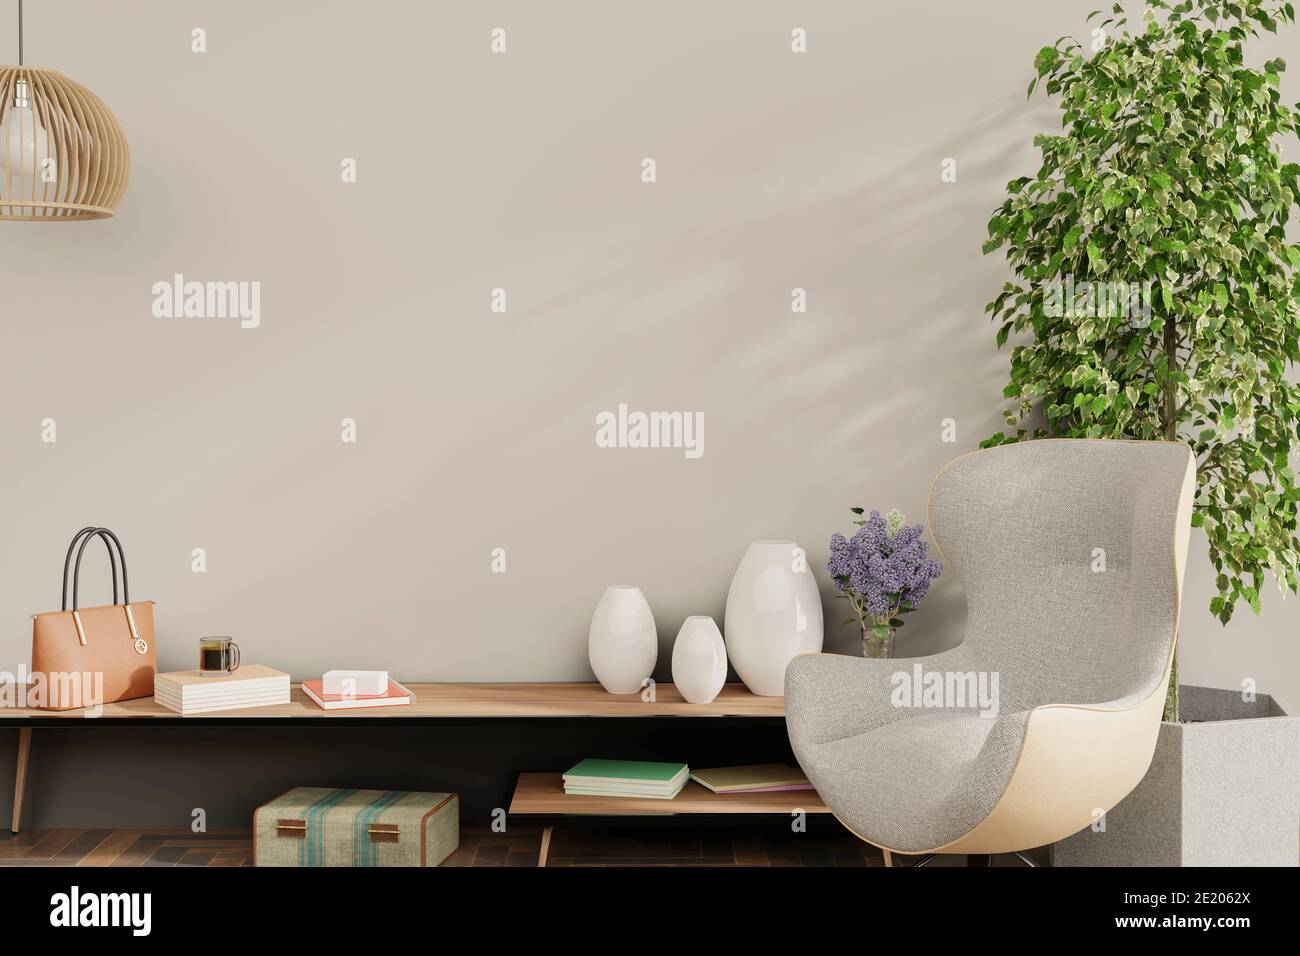 Mock up Rahmen in Hause Innenraum Hintergrund, Wohnzimmer mit natürlichen Möbeln, skandinavischen Stil 3d-Illustration Stockfoto